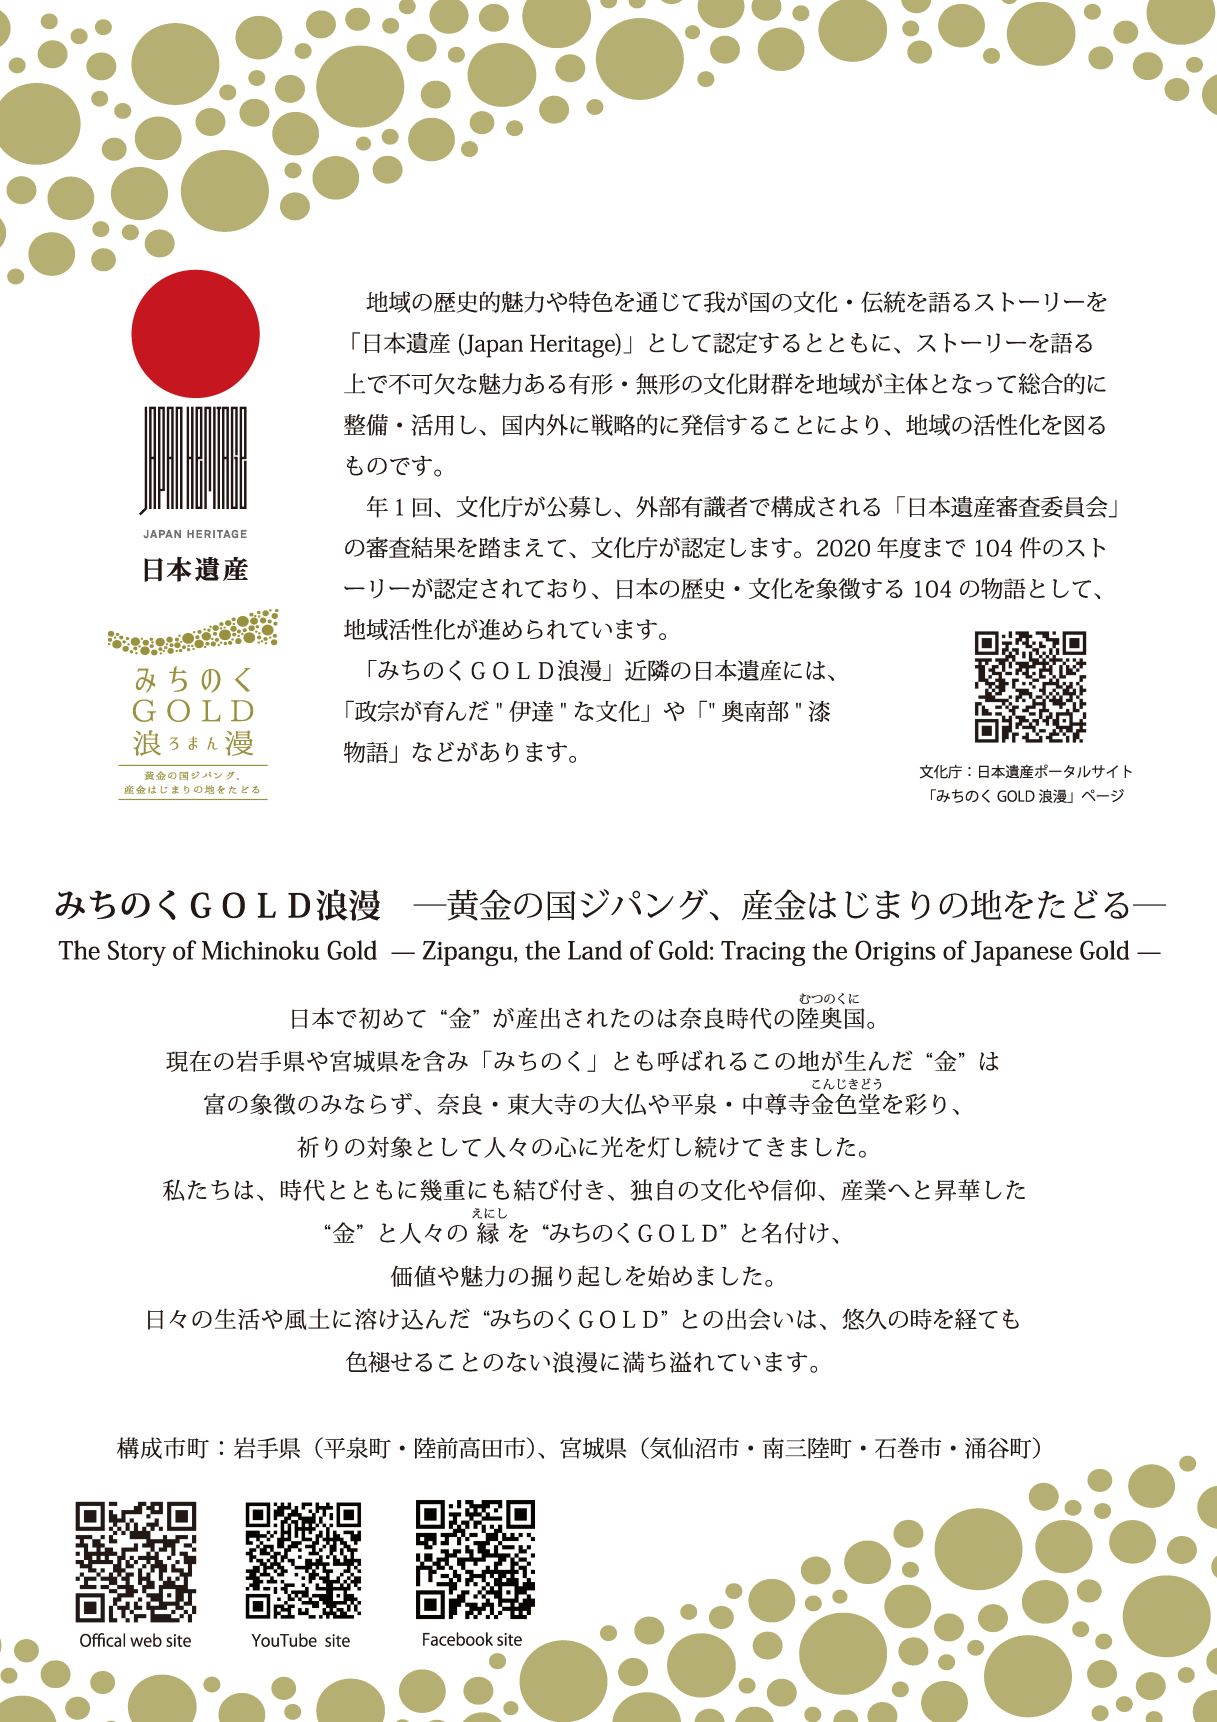 日本遺産認定4周年記念展「日本遺産『みちのくGOLD浪漫』」のチラシ